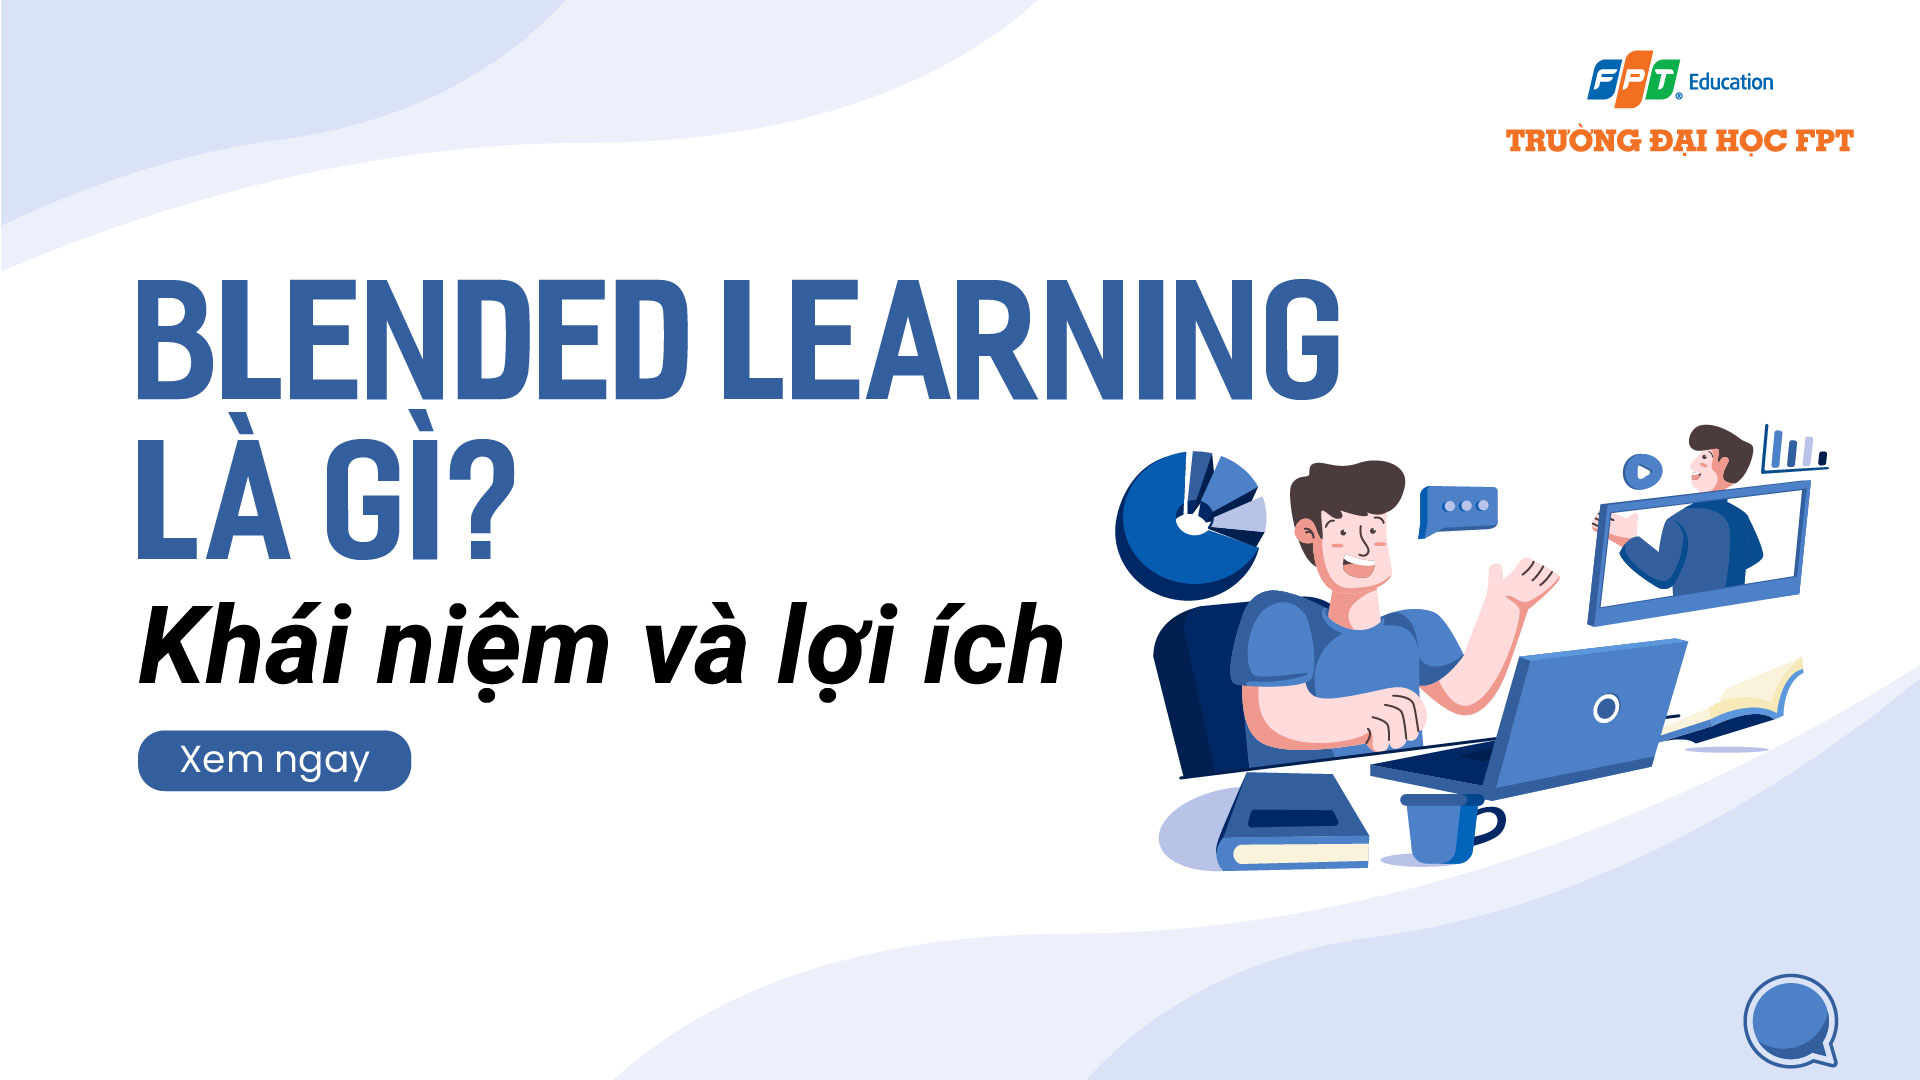 Blended learning là gì? Định nghĩa, mô hình và lợi ích